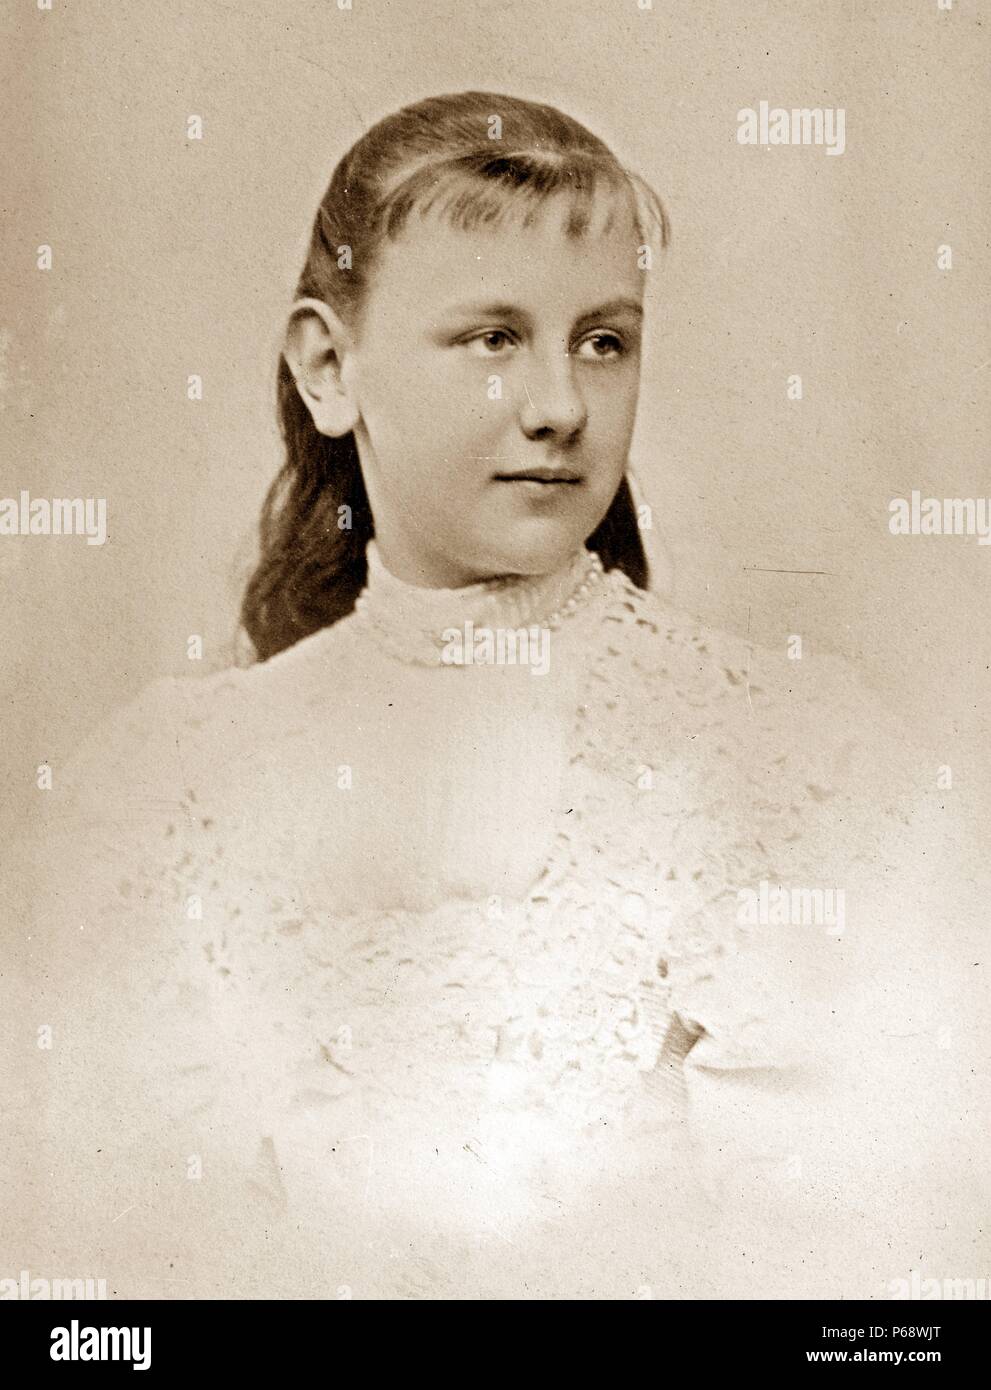 Wilhelmina (31 août 1880 - 28 novembre 1962) âgée de 12 ans. Plus tard, la reine du Royaume des Pays-Bas de 1890 à 1948. Elle régna pendant près de 58 ans Banque D'Images